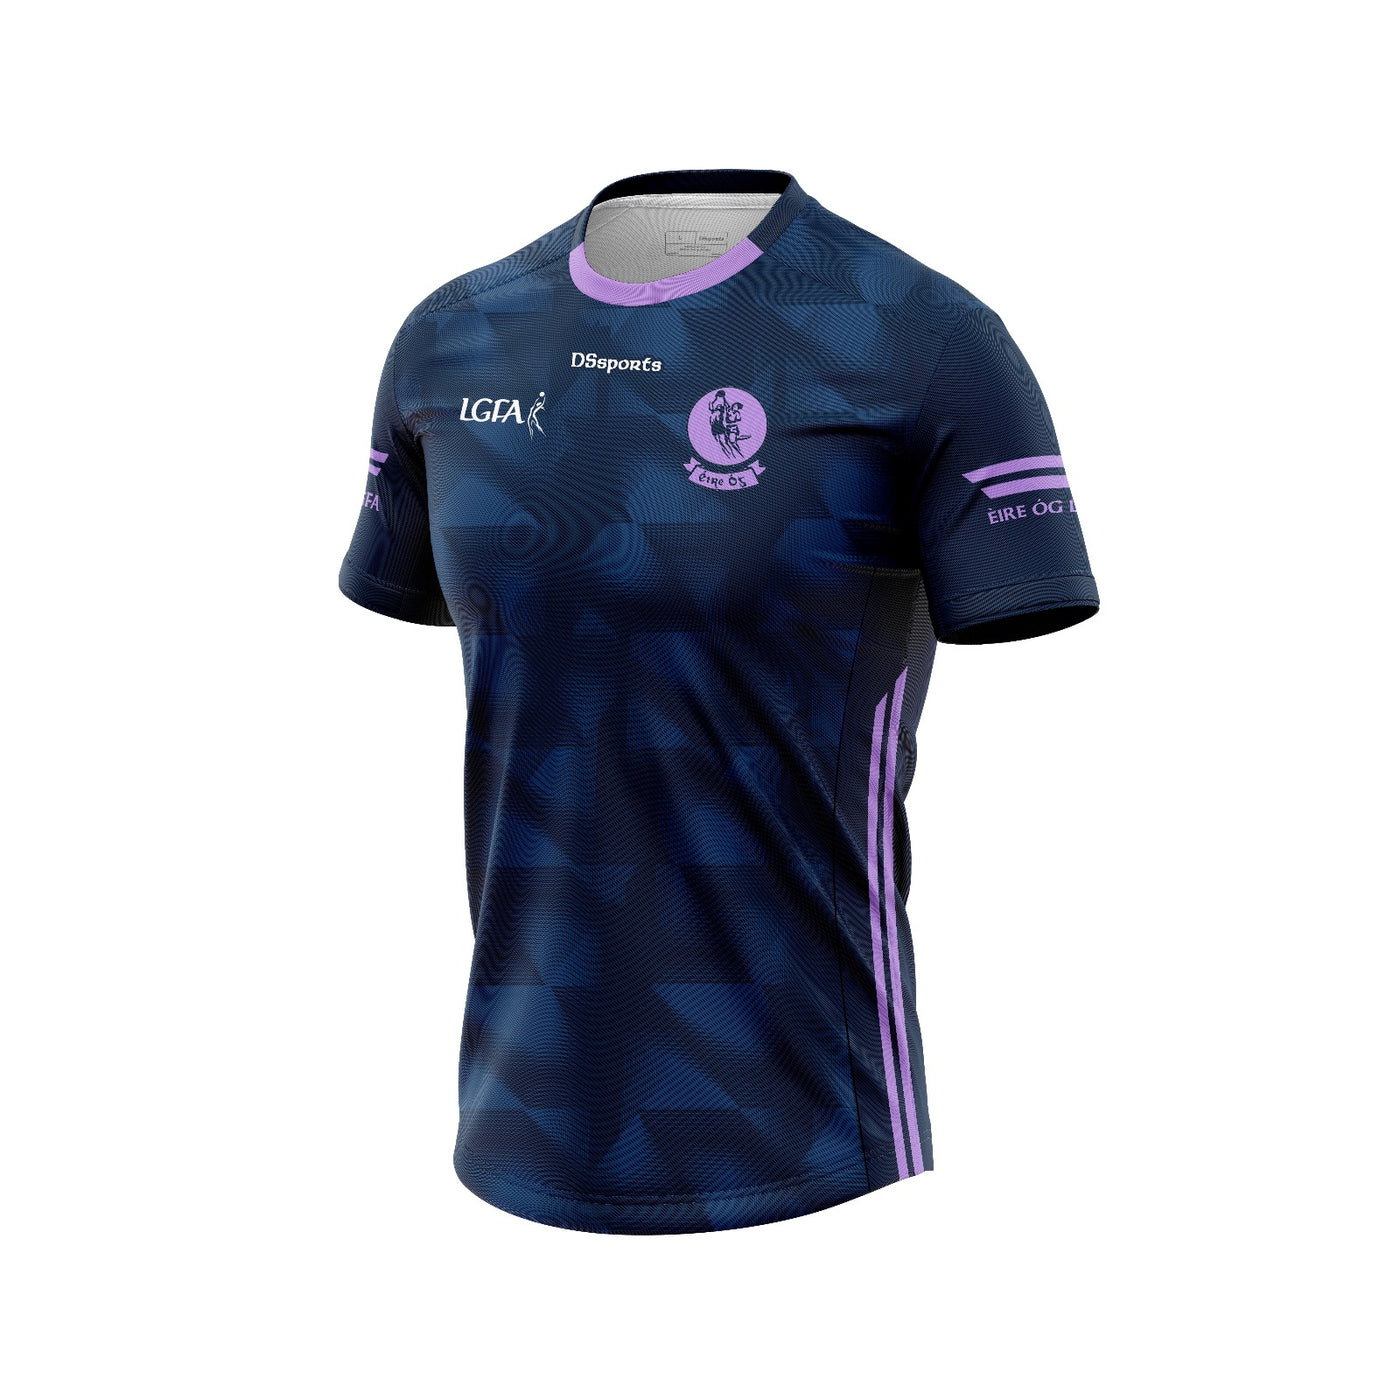 Eire Og LGFA - Purple Training Jersey